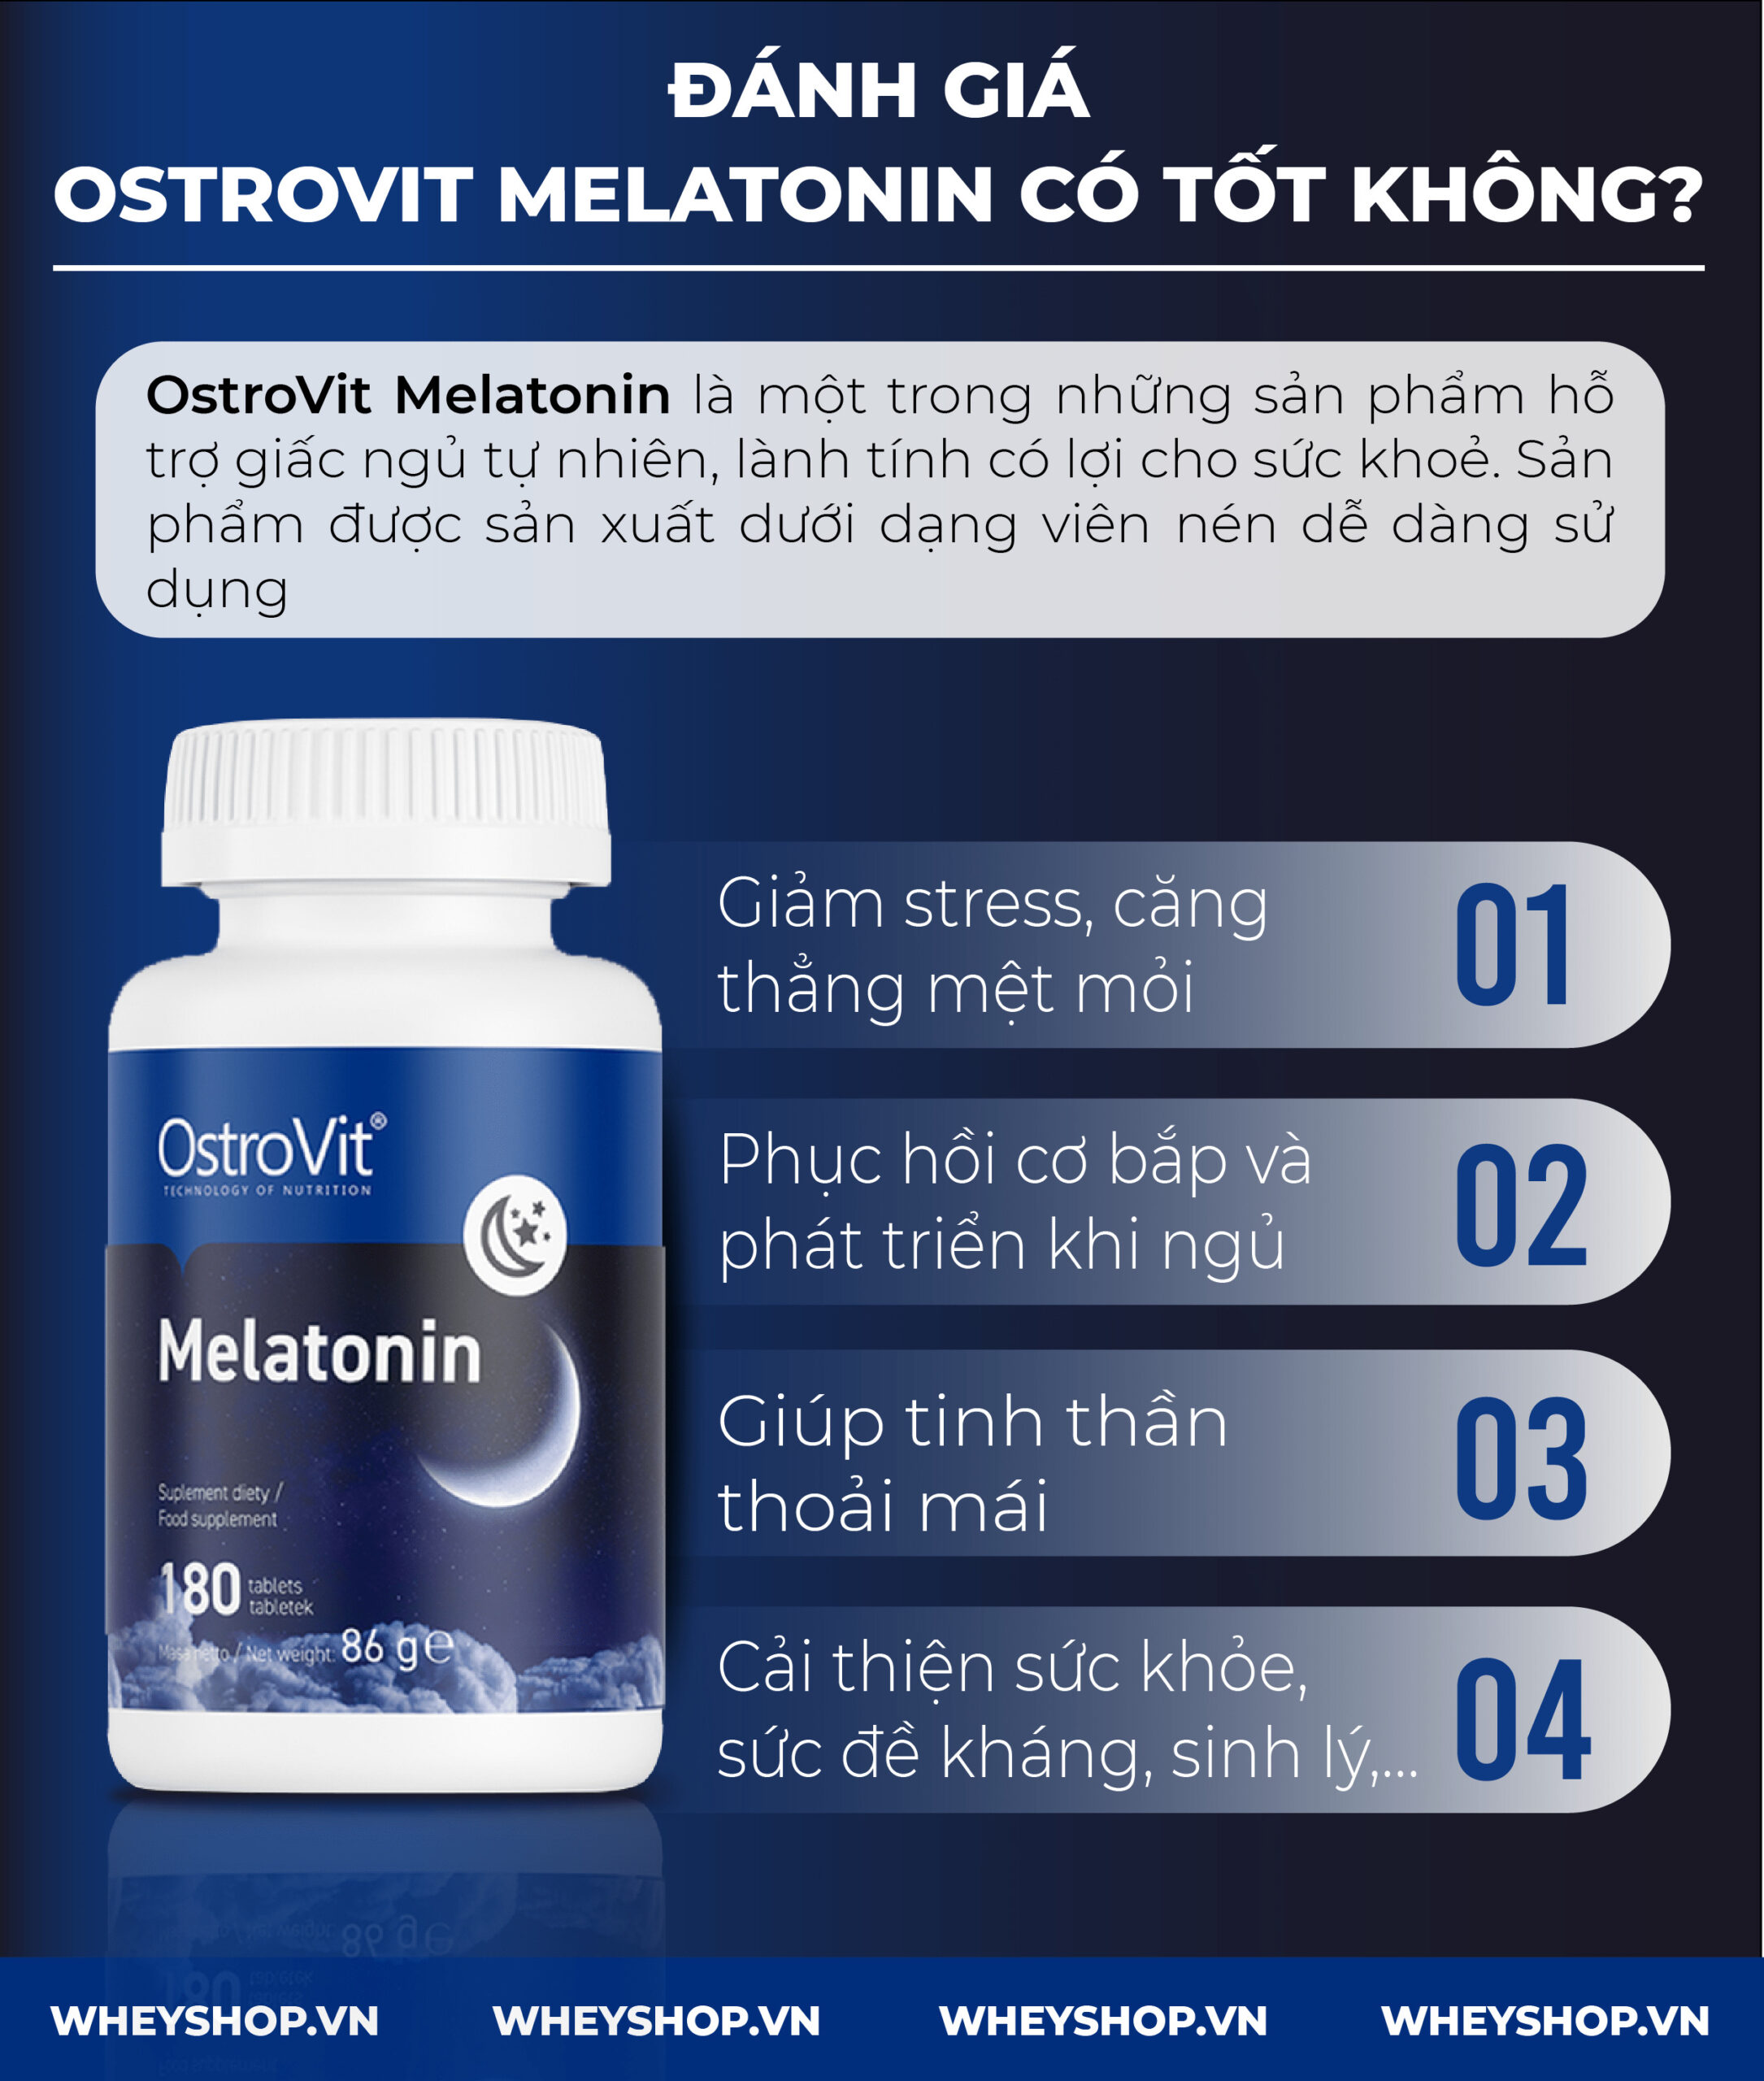 Nếu bạn đang phân vân khi lựa chọn Ostrovit Melatonin thì hãy cùng WheyShop review đánh giá Ostrovit Melatotin có tốt không qua bài viết...